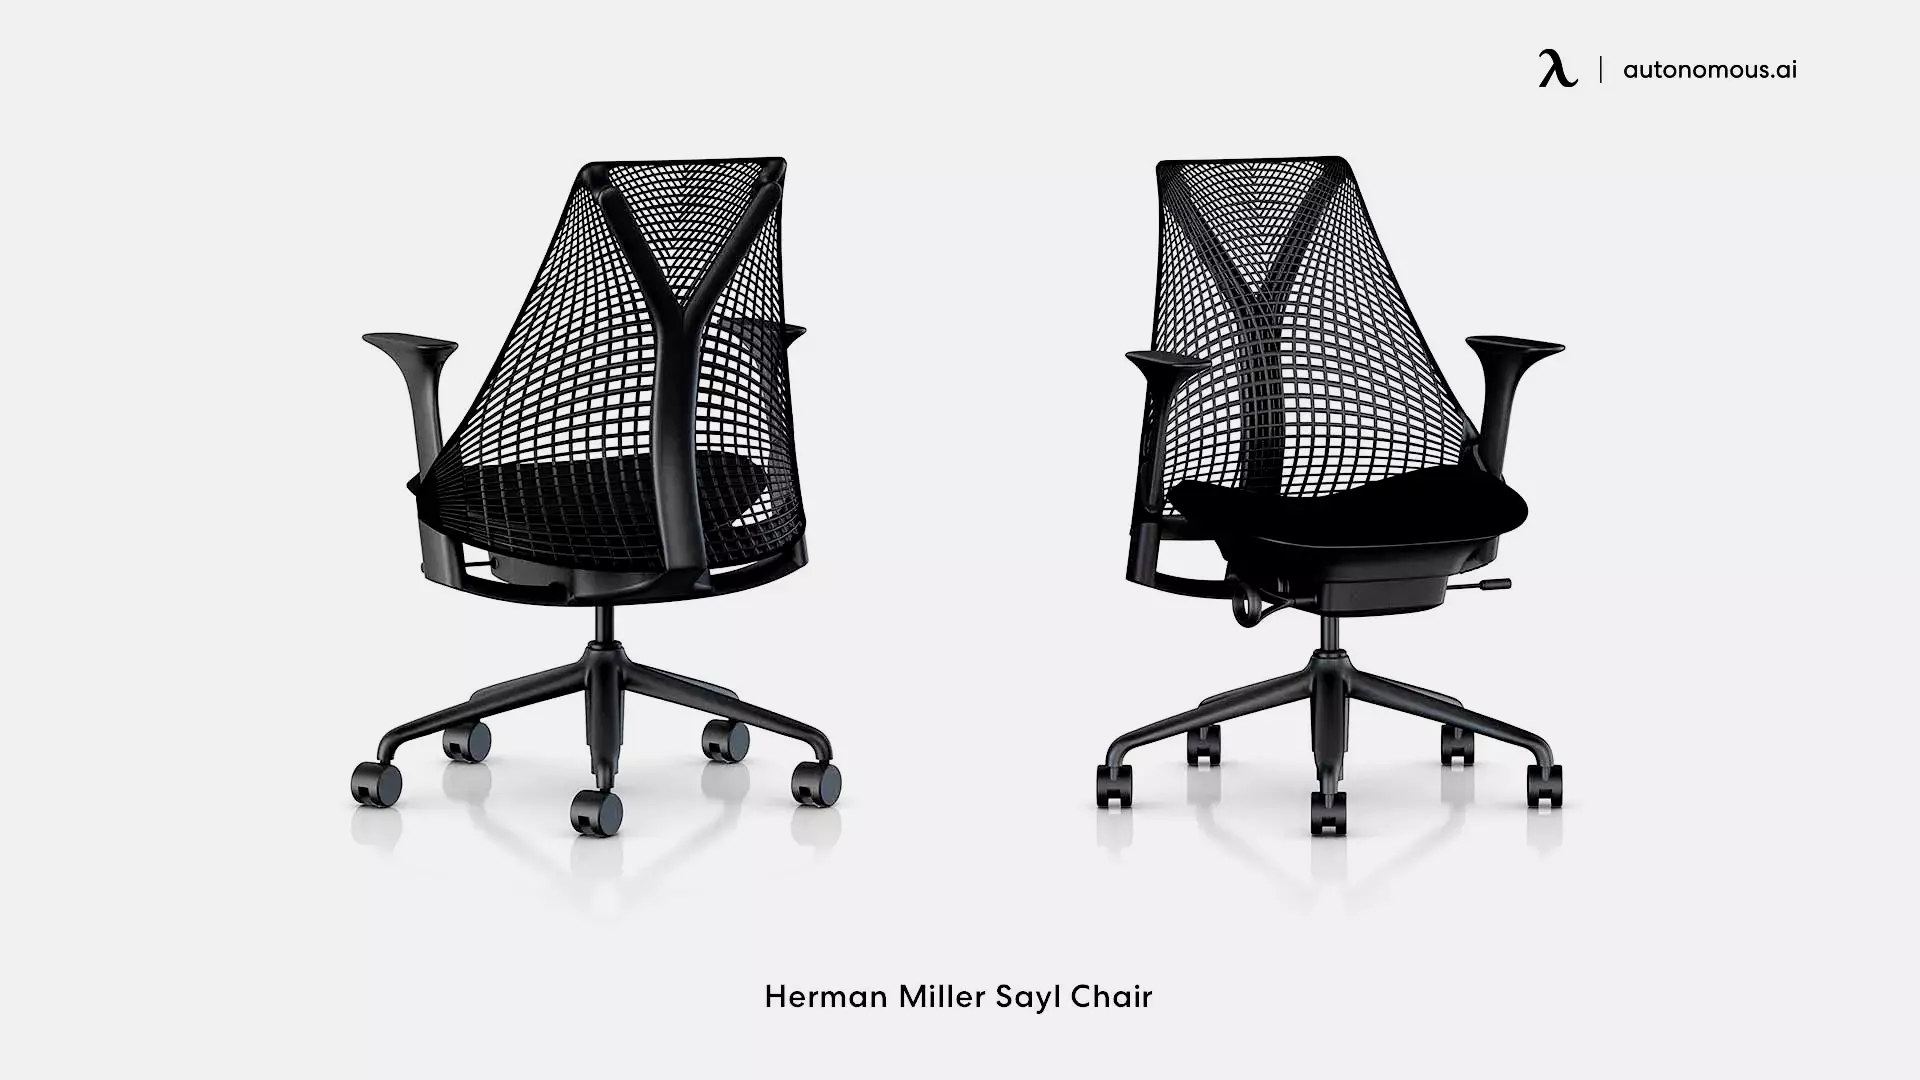 Herman Miller Sayl industrial work chair